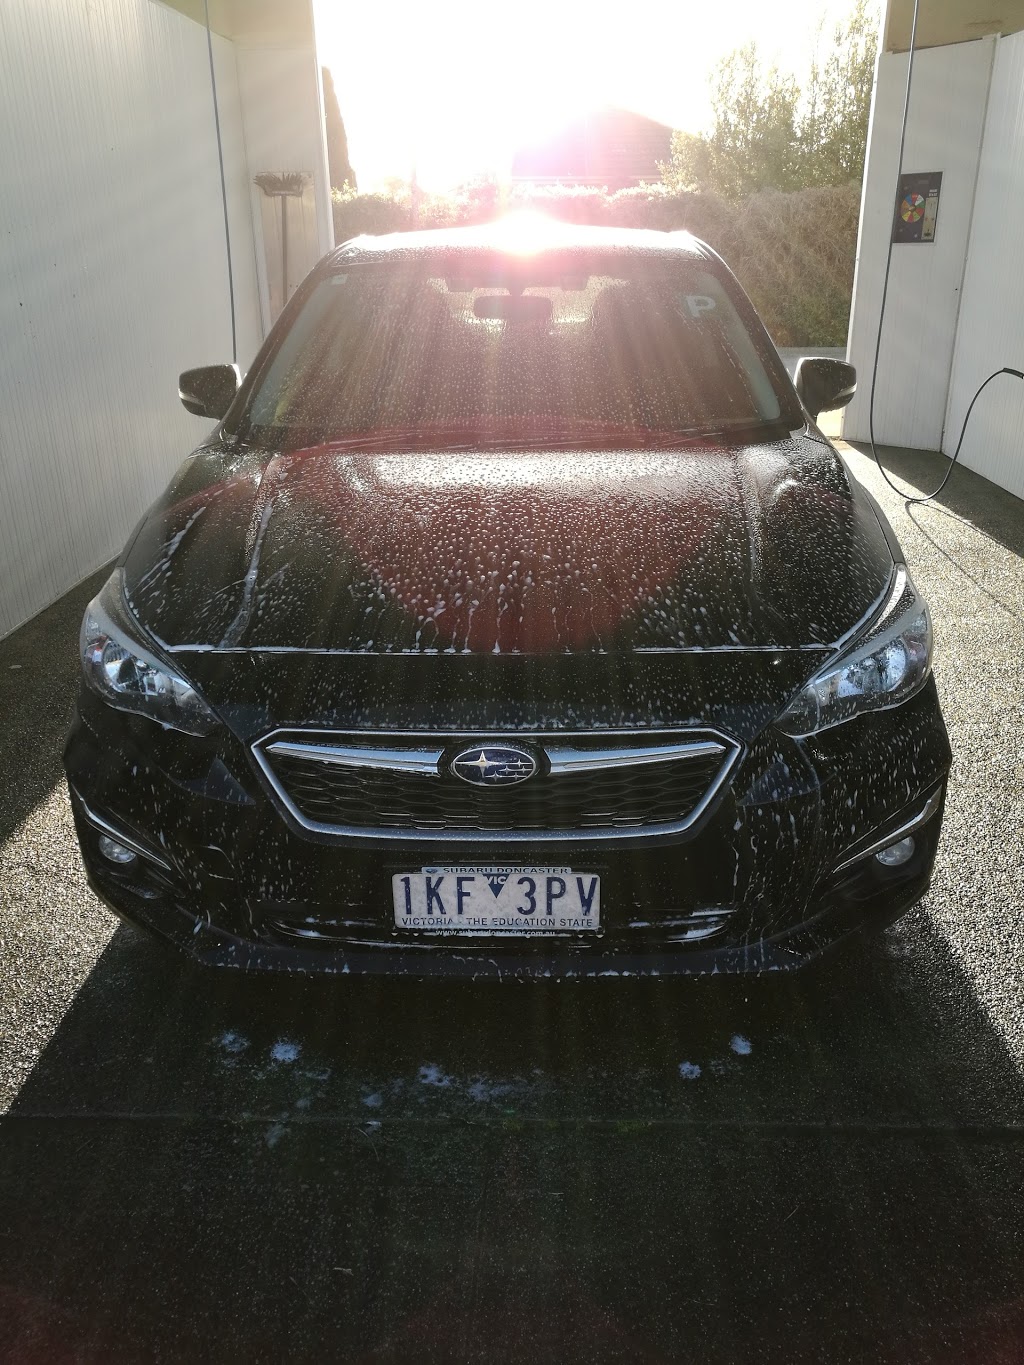 Autobrite Car Wash | car wash | 371 Blackburn Rd, Mount Waverley VIC 3149, Australia